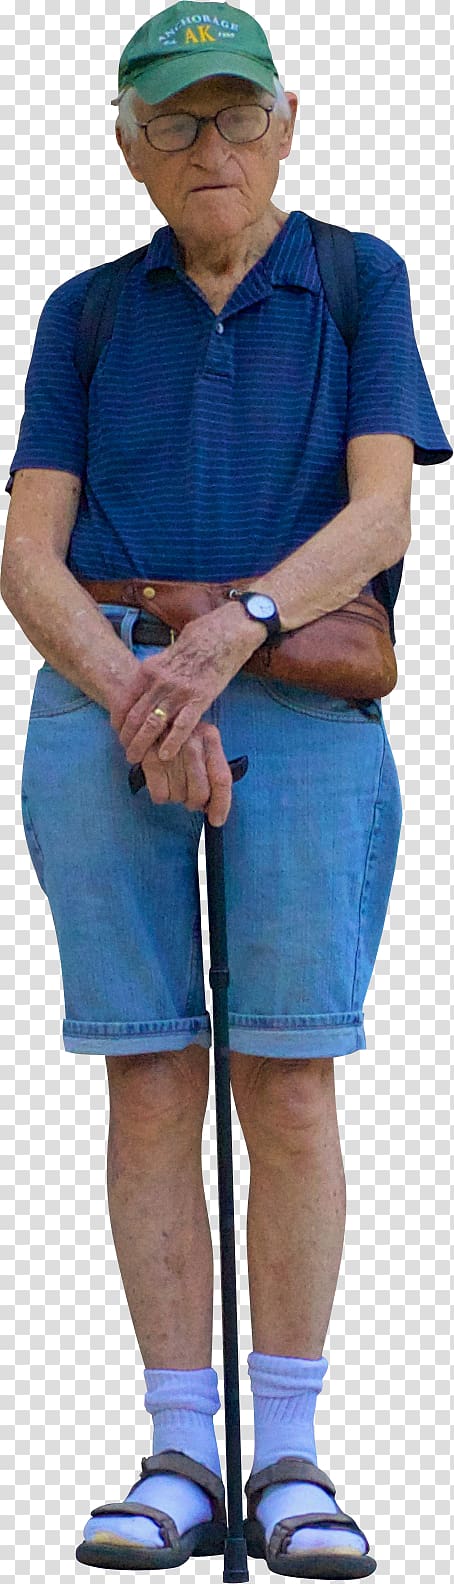 Adobe shop Shoulder Scape GIMP Hat, elderly man standing transparent background PNG clipart